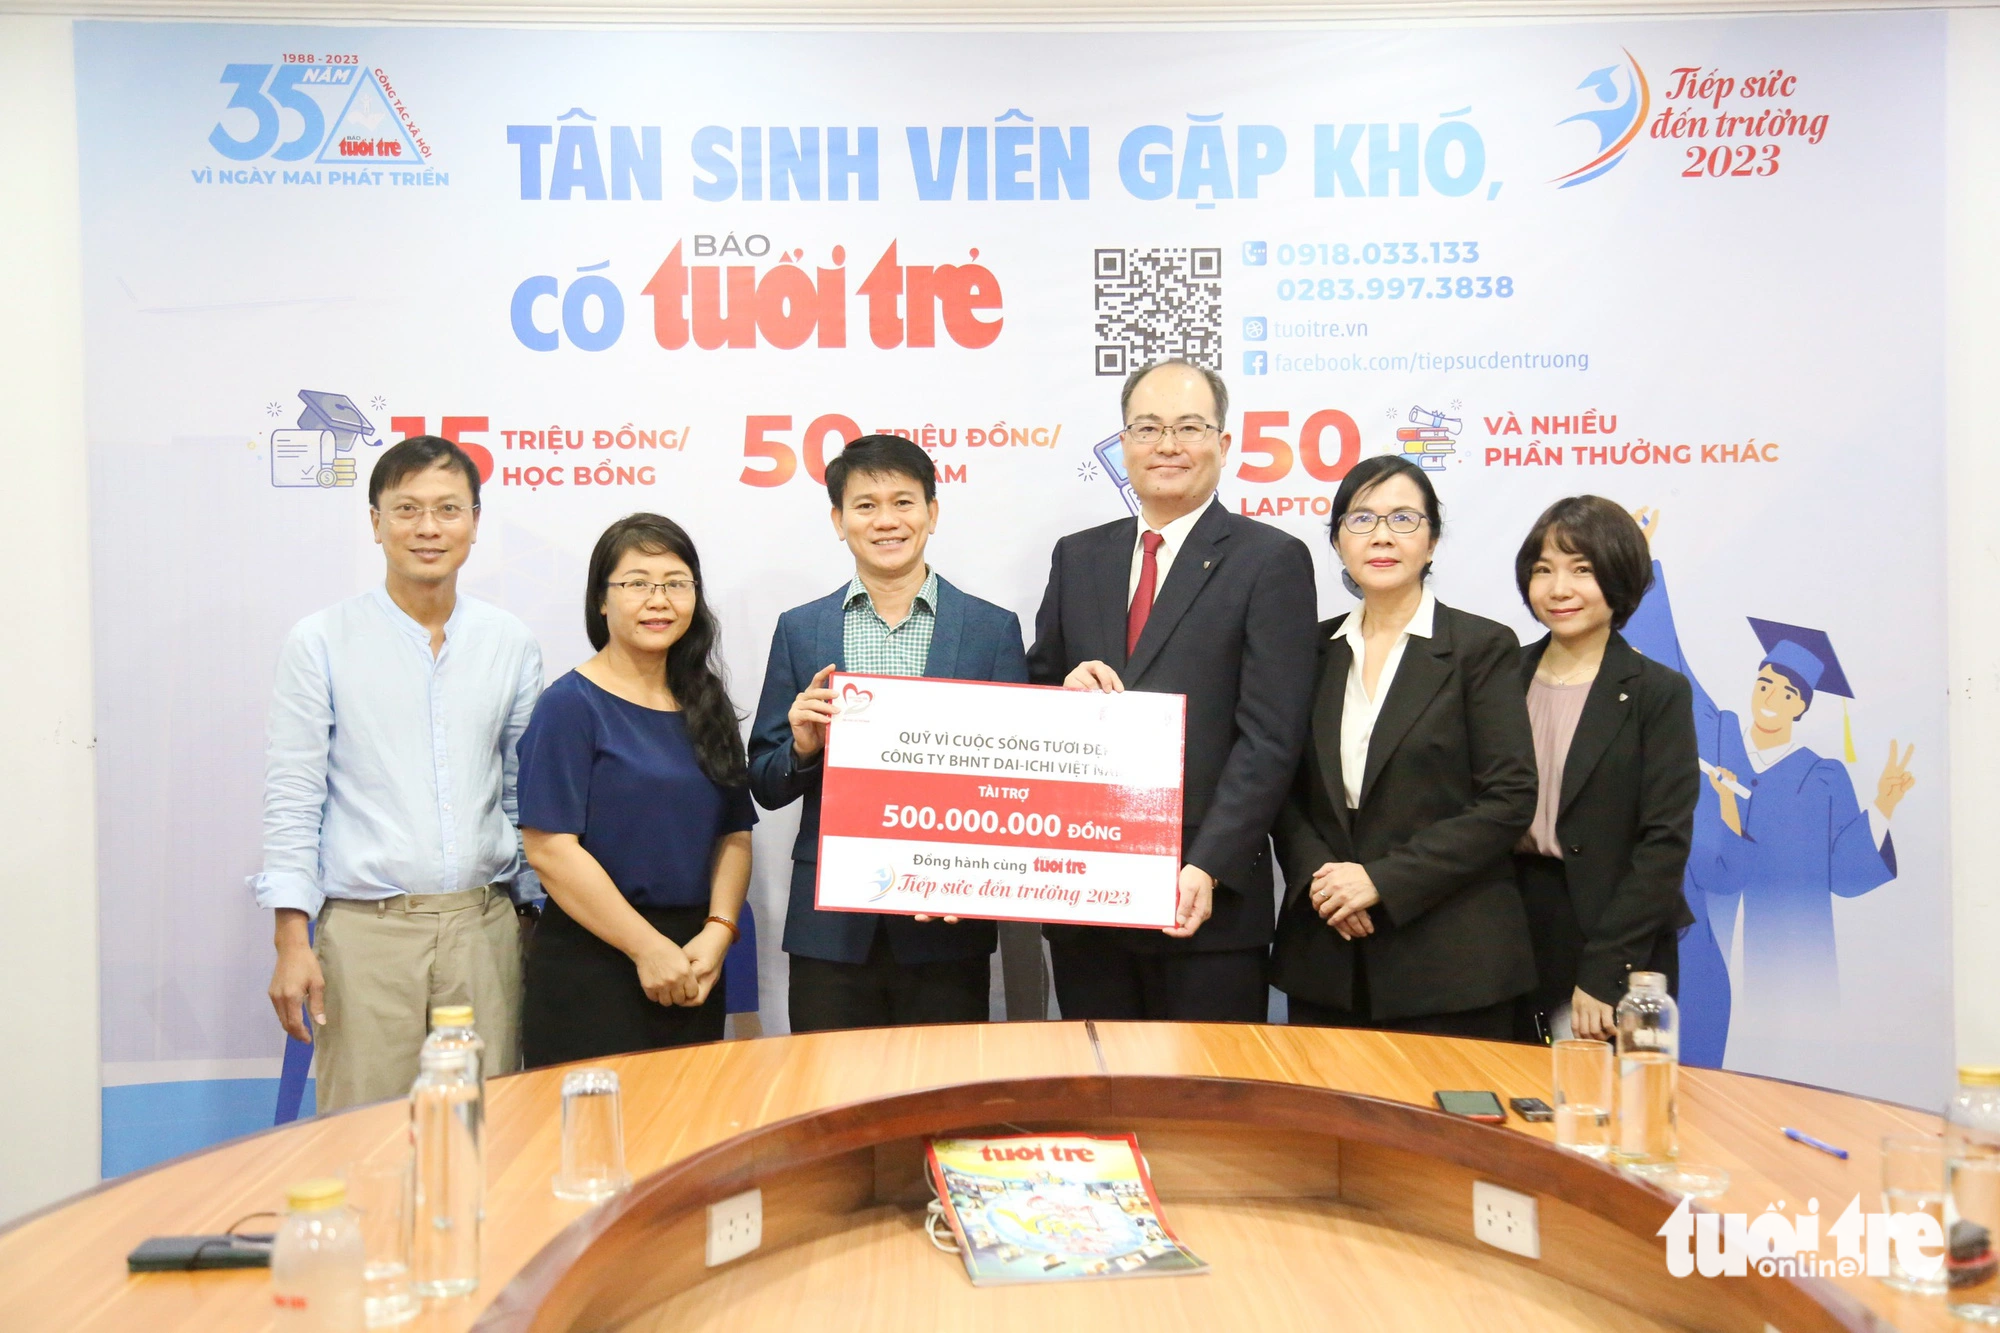 Ông Seigo Fujimaru (thứ 4 từ trái sang), đại diện Công ty Dai-ichi Life Việt Nam, trao 500 triệu đồng cho chương trình Tiếp sức đến trường 2023 - Ảnh: PHƯƠNG QUYÊN